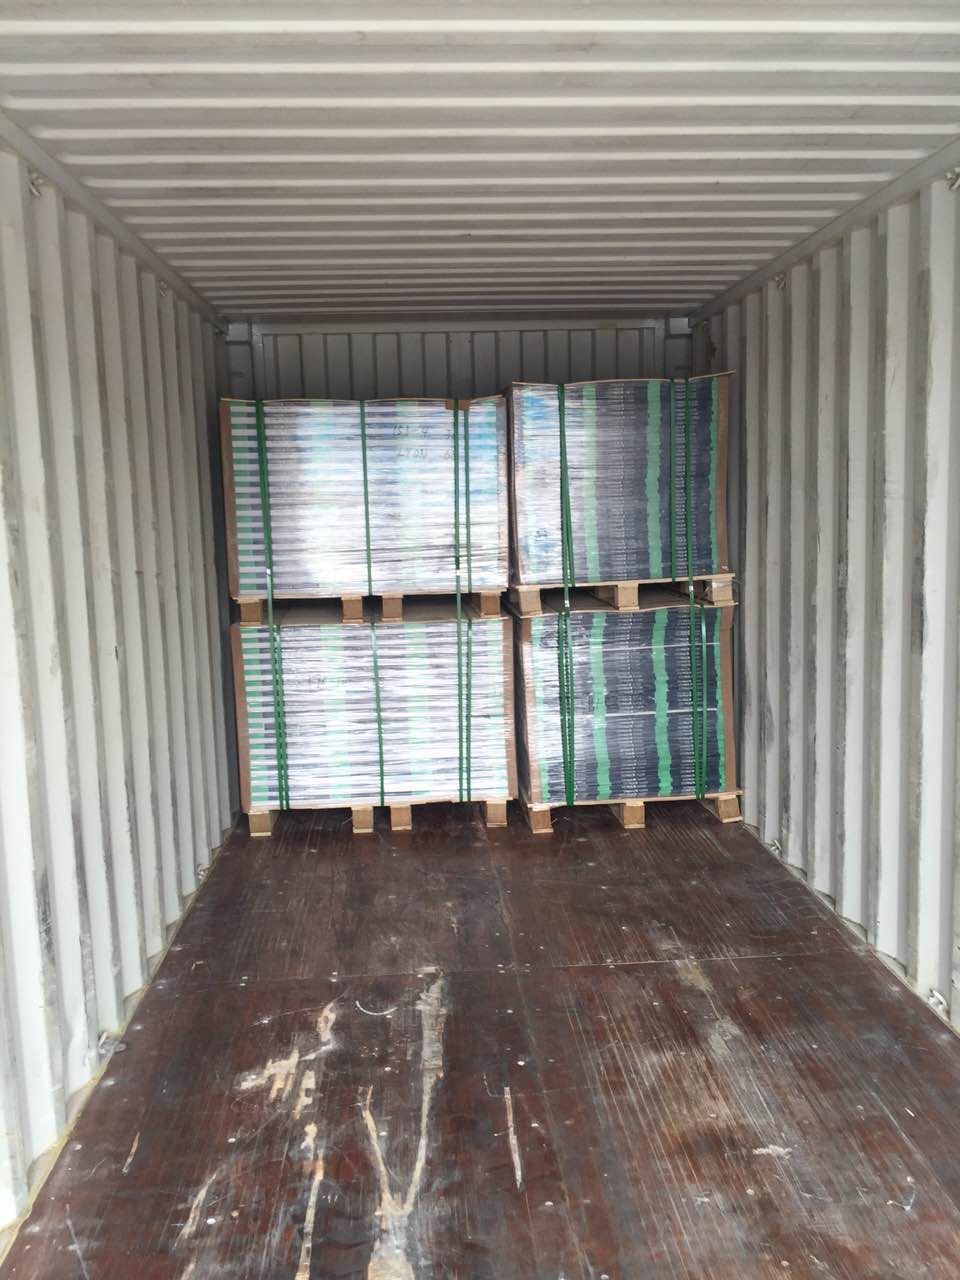 loading goods